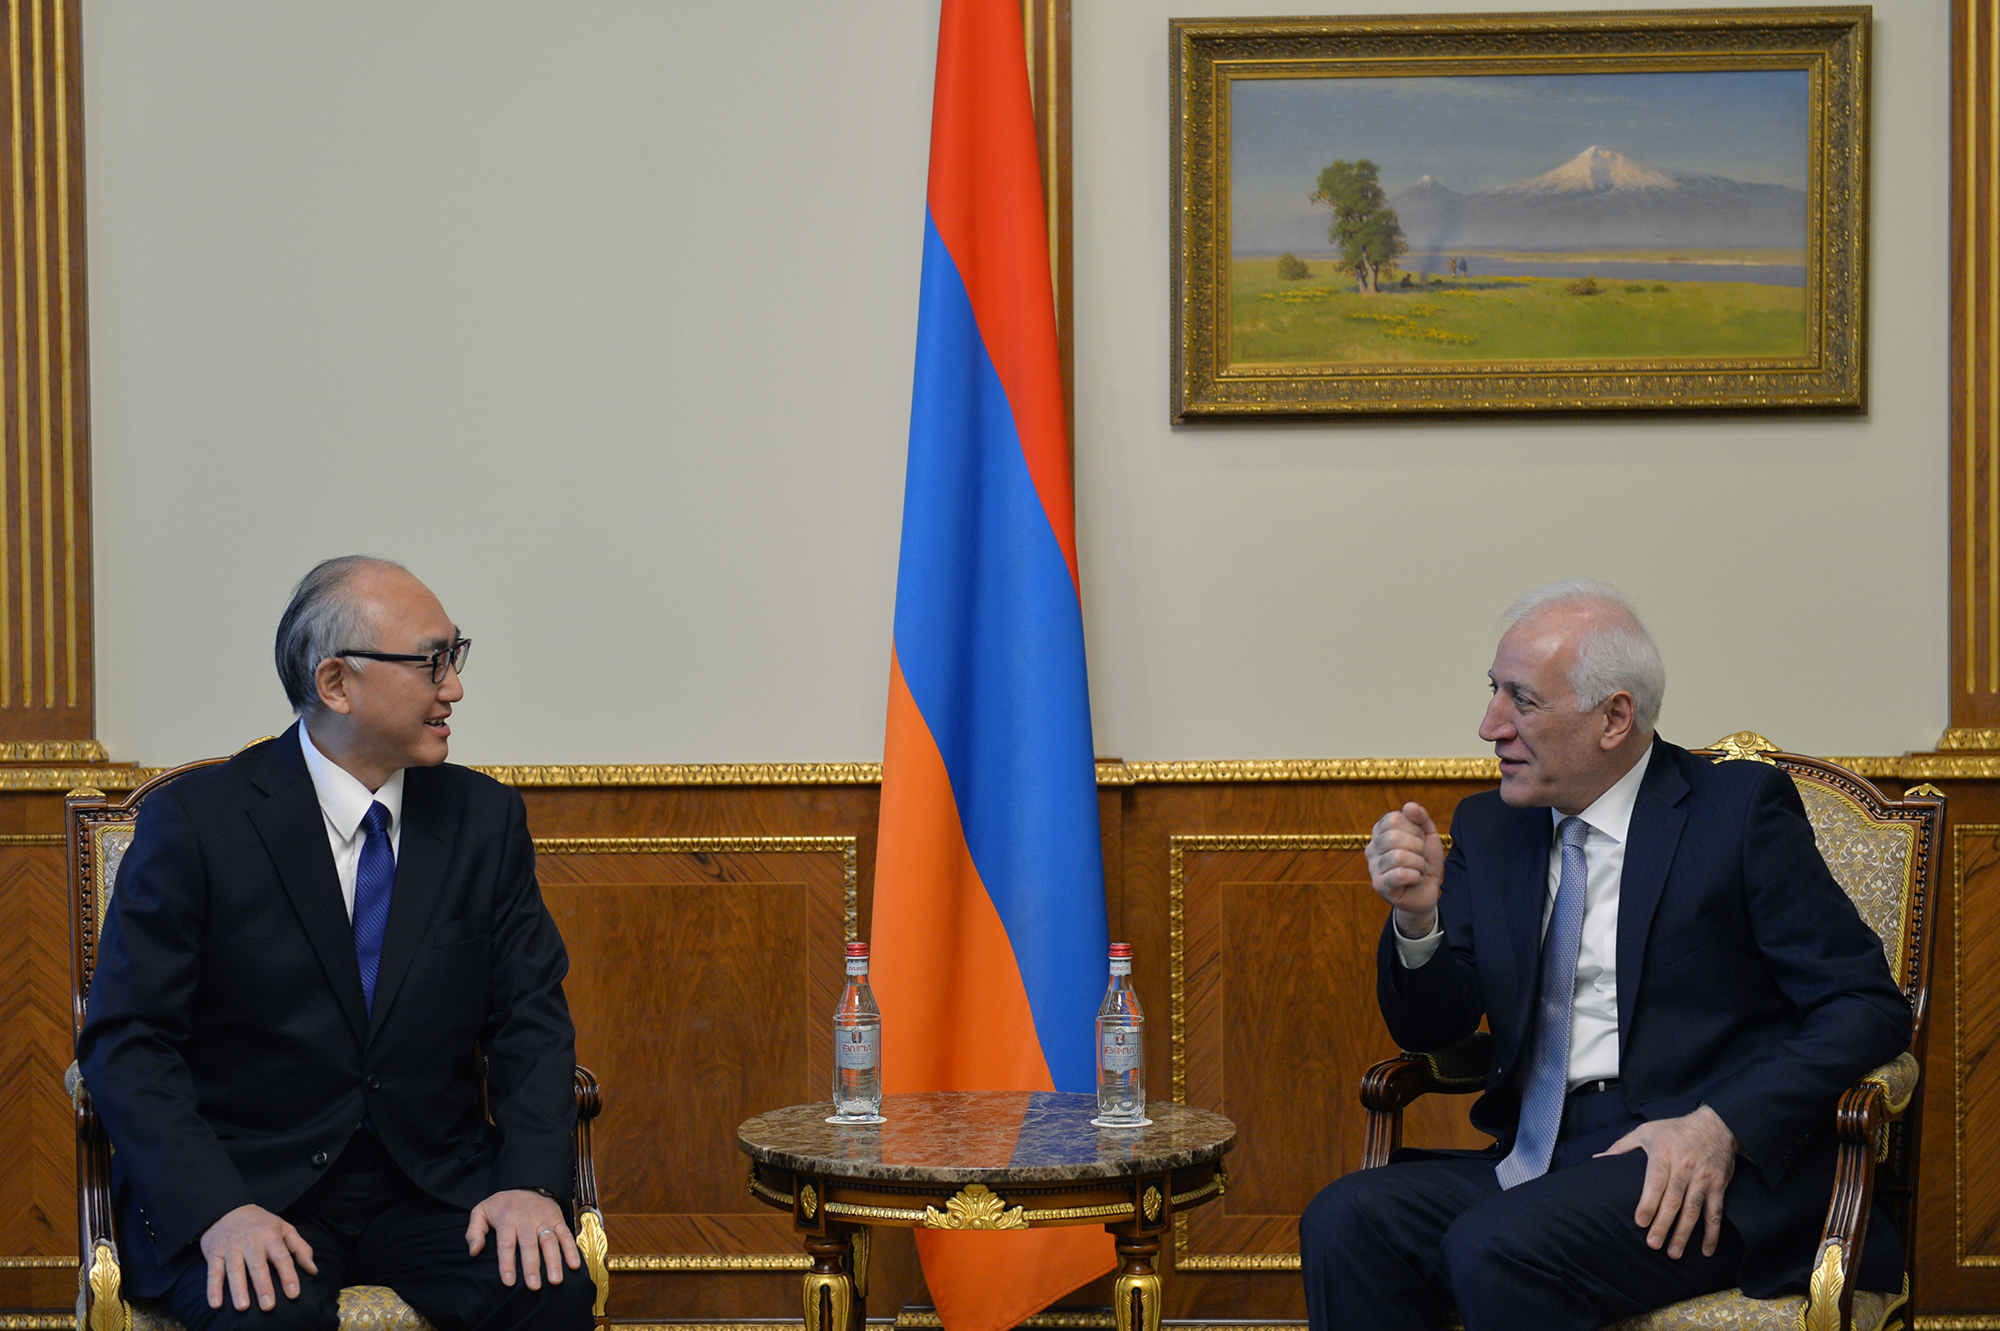 ՀՀ նախագահն ու դեսպանը քննարկել են հայ-ճապոնական երկկողմ օրակարգի հարցեր